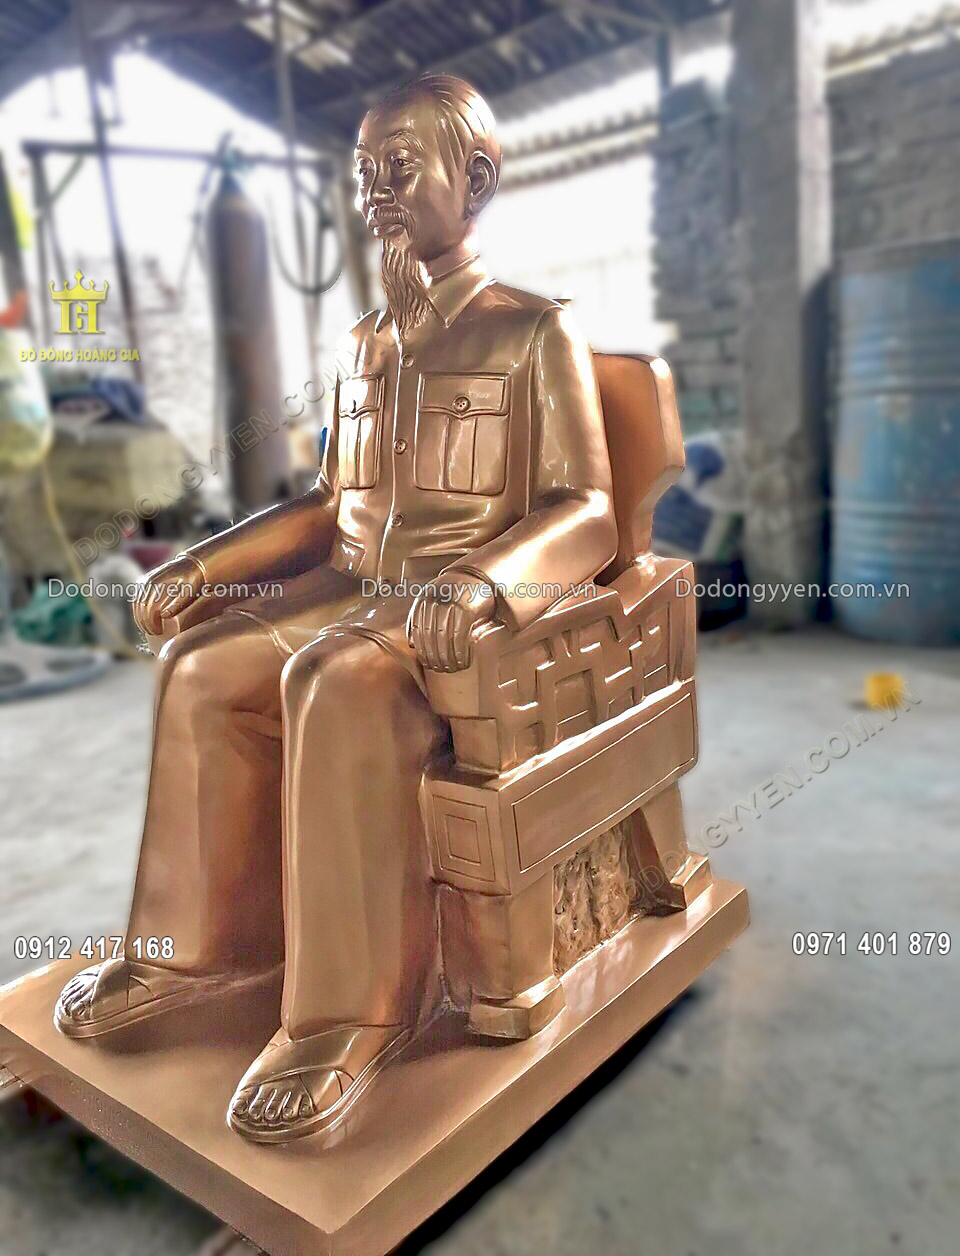 Pho tượng Bác Hồ ngồi ghế ngai phù hợp để bày trí tại không gian sống và làm việc